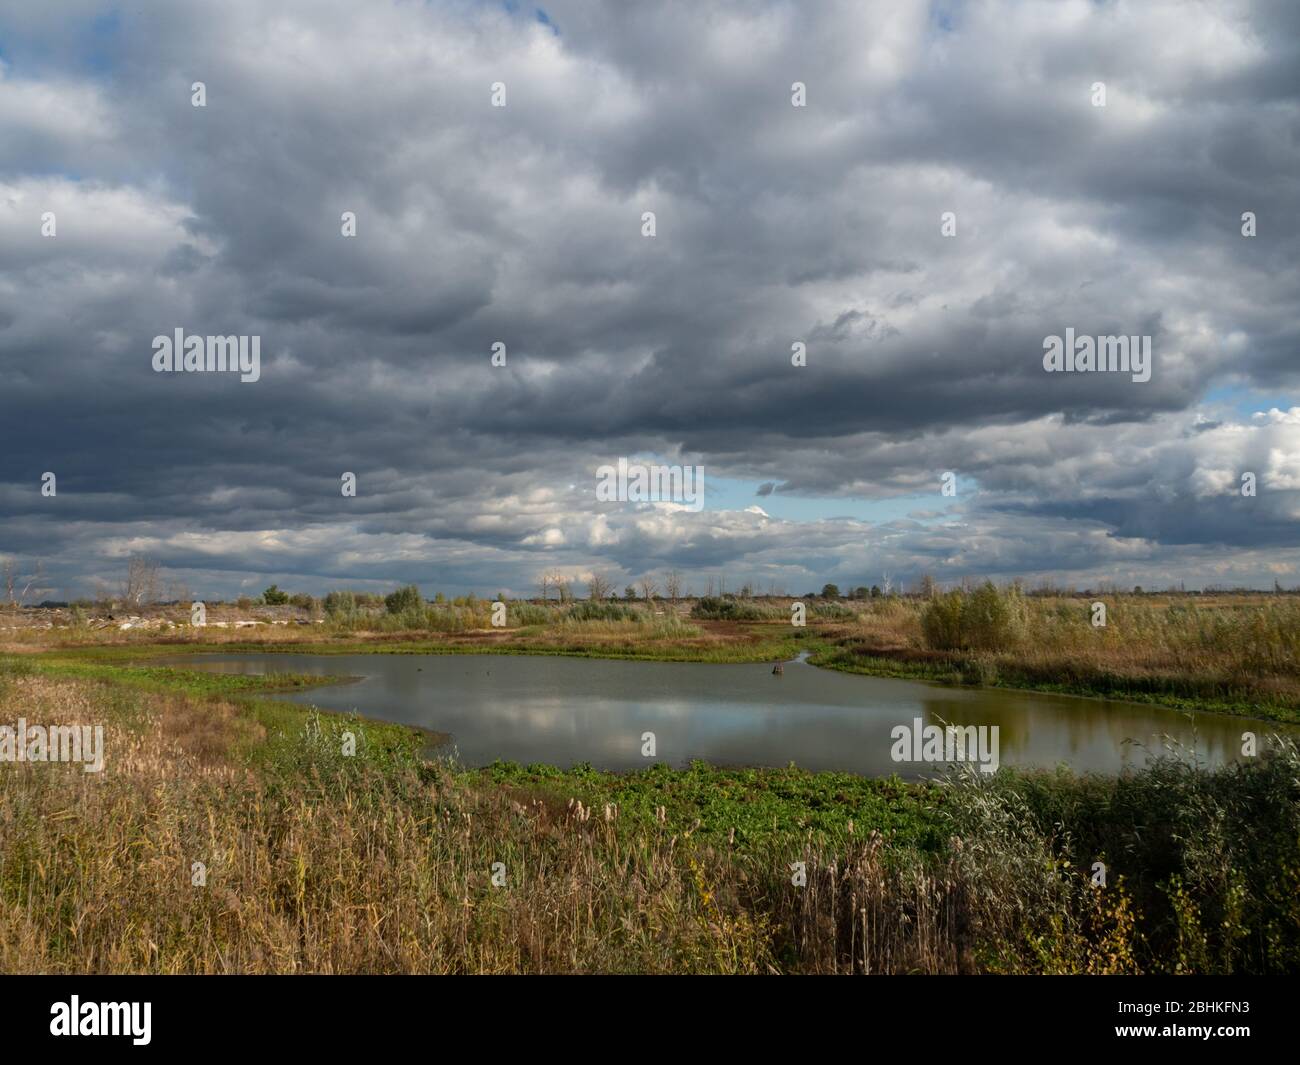 Rottami e residui di allevamento di pescatori nella zona di esclusione di Cernobyl, Ucraina. Cielo spettacolare sul lago. Foto Stock